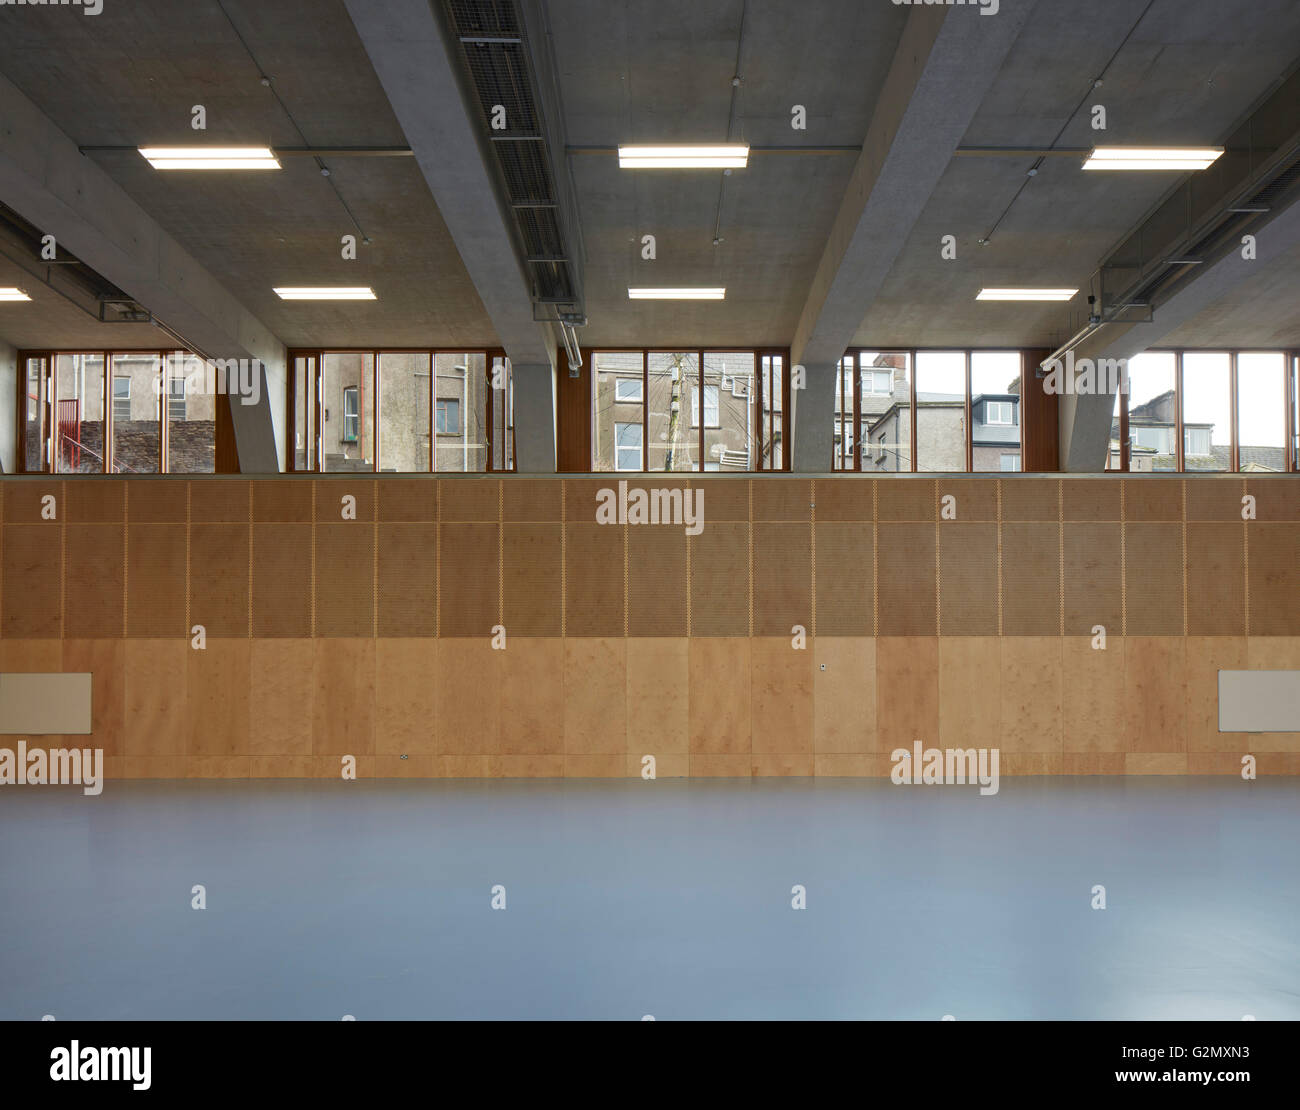 Hauteur Triple salle de sport avec claire-voie. Sainte Angela's College Cork, Cork, Irlande. Architecte : O'Donnell Tuomey Architects, 2016. Banque D'Images